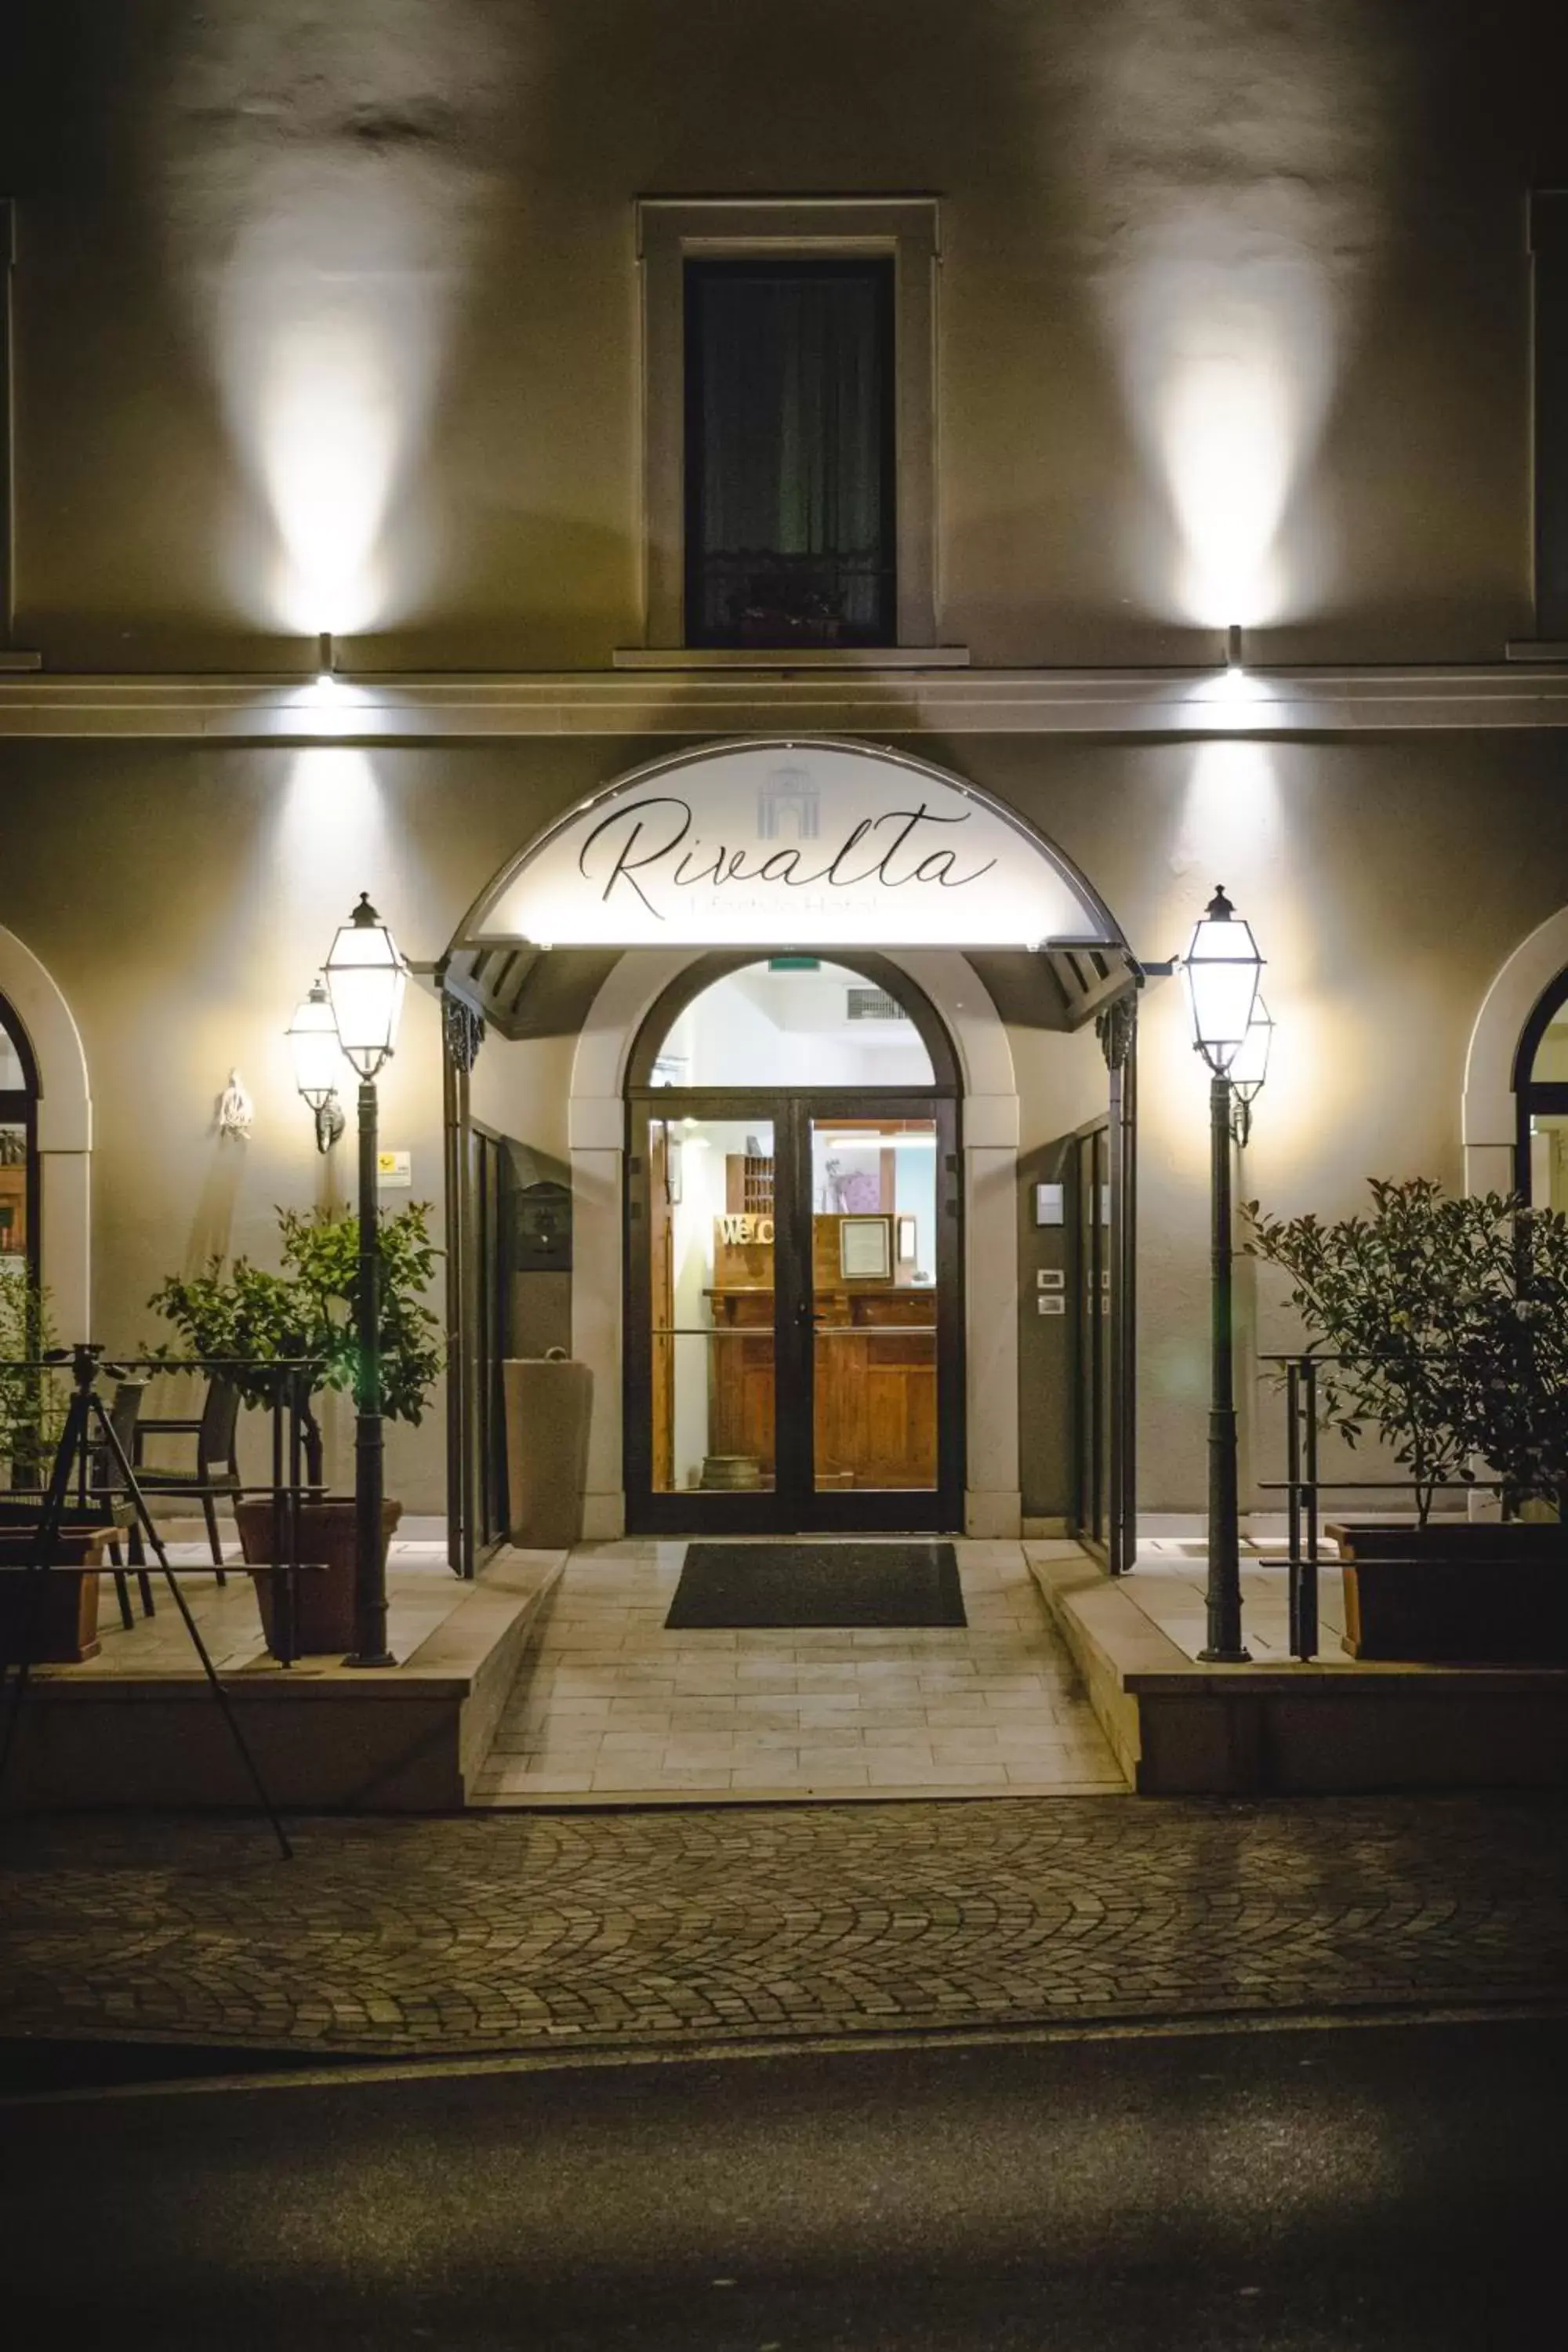 Facade/entrance in Rivalta Life Style Hotel